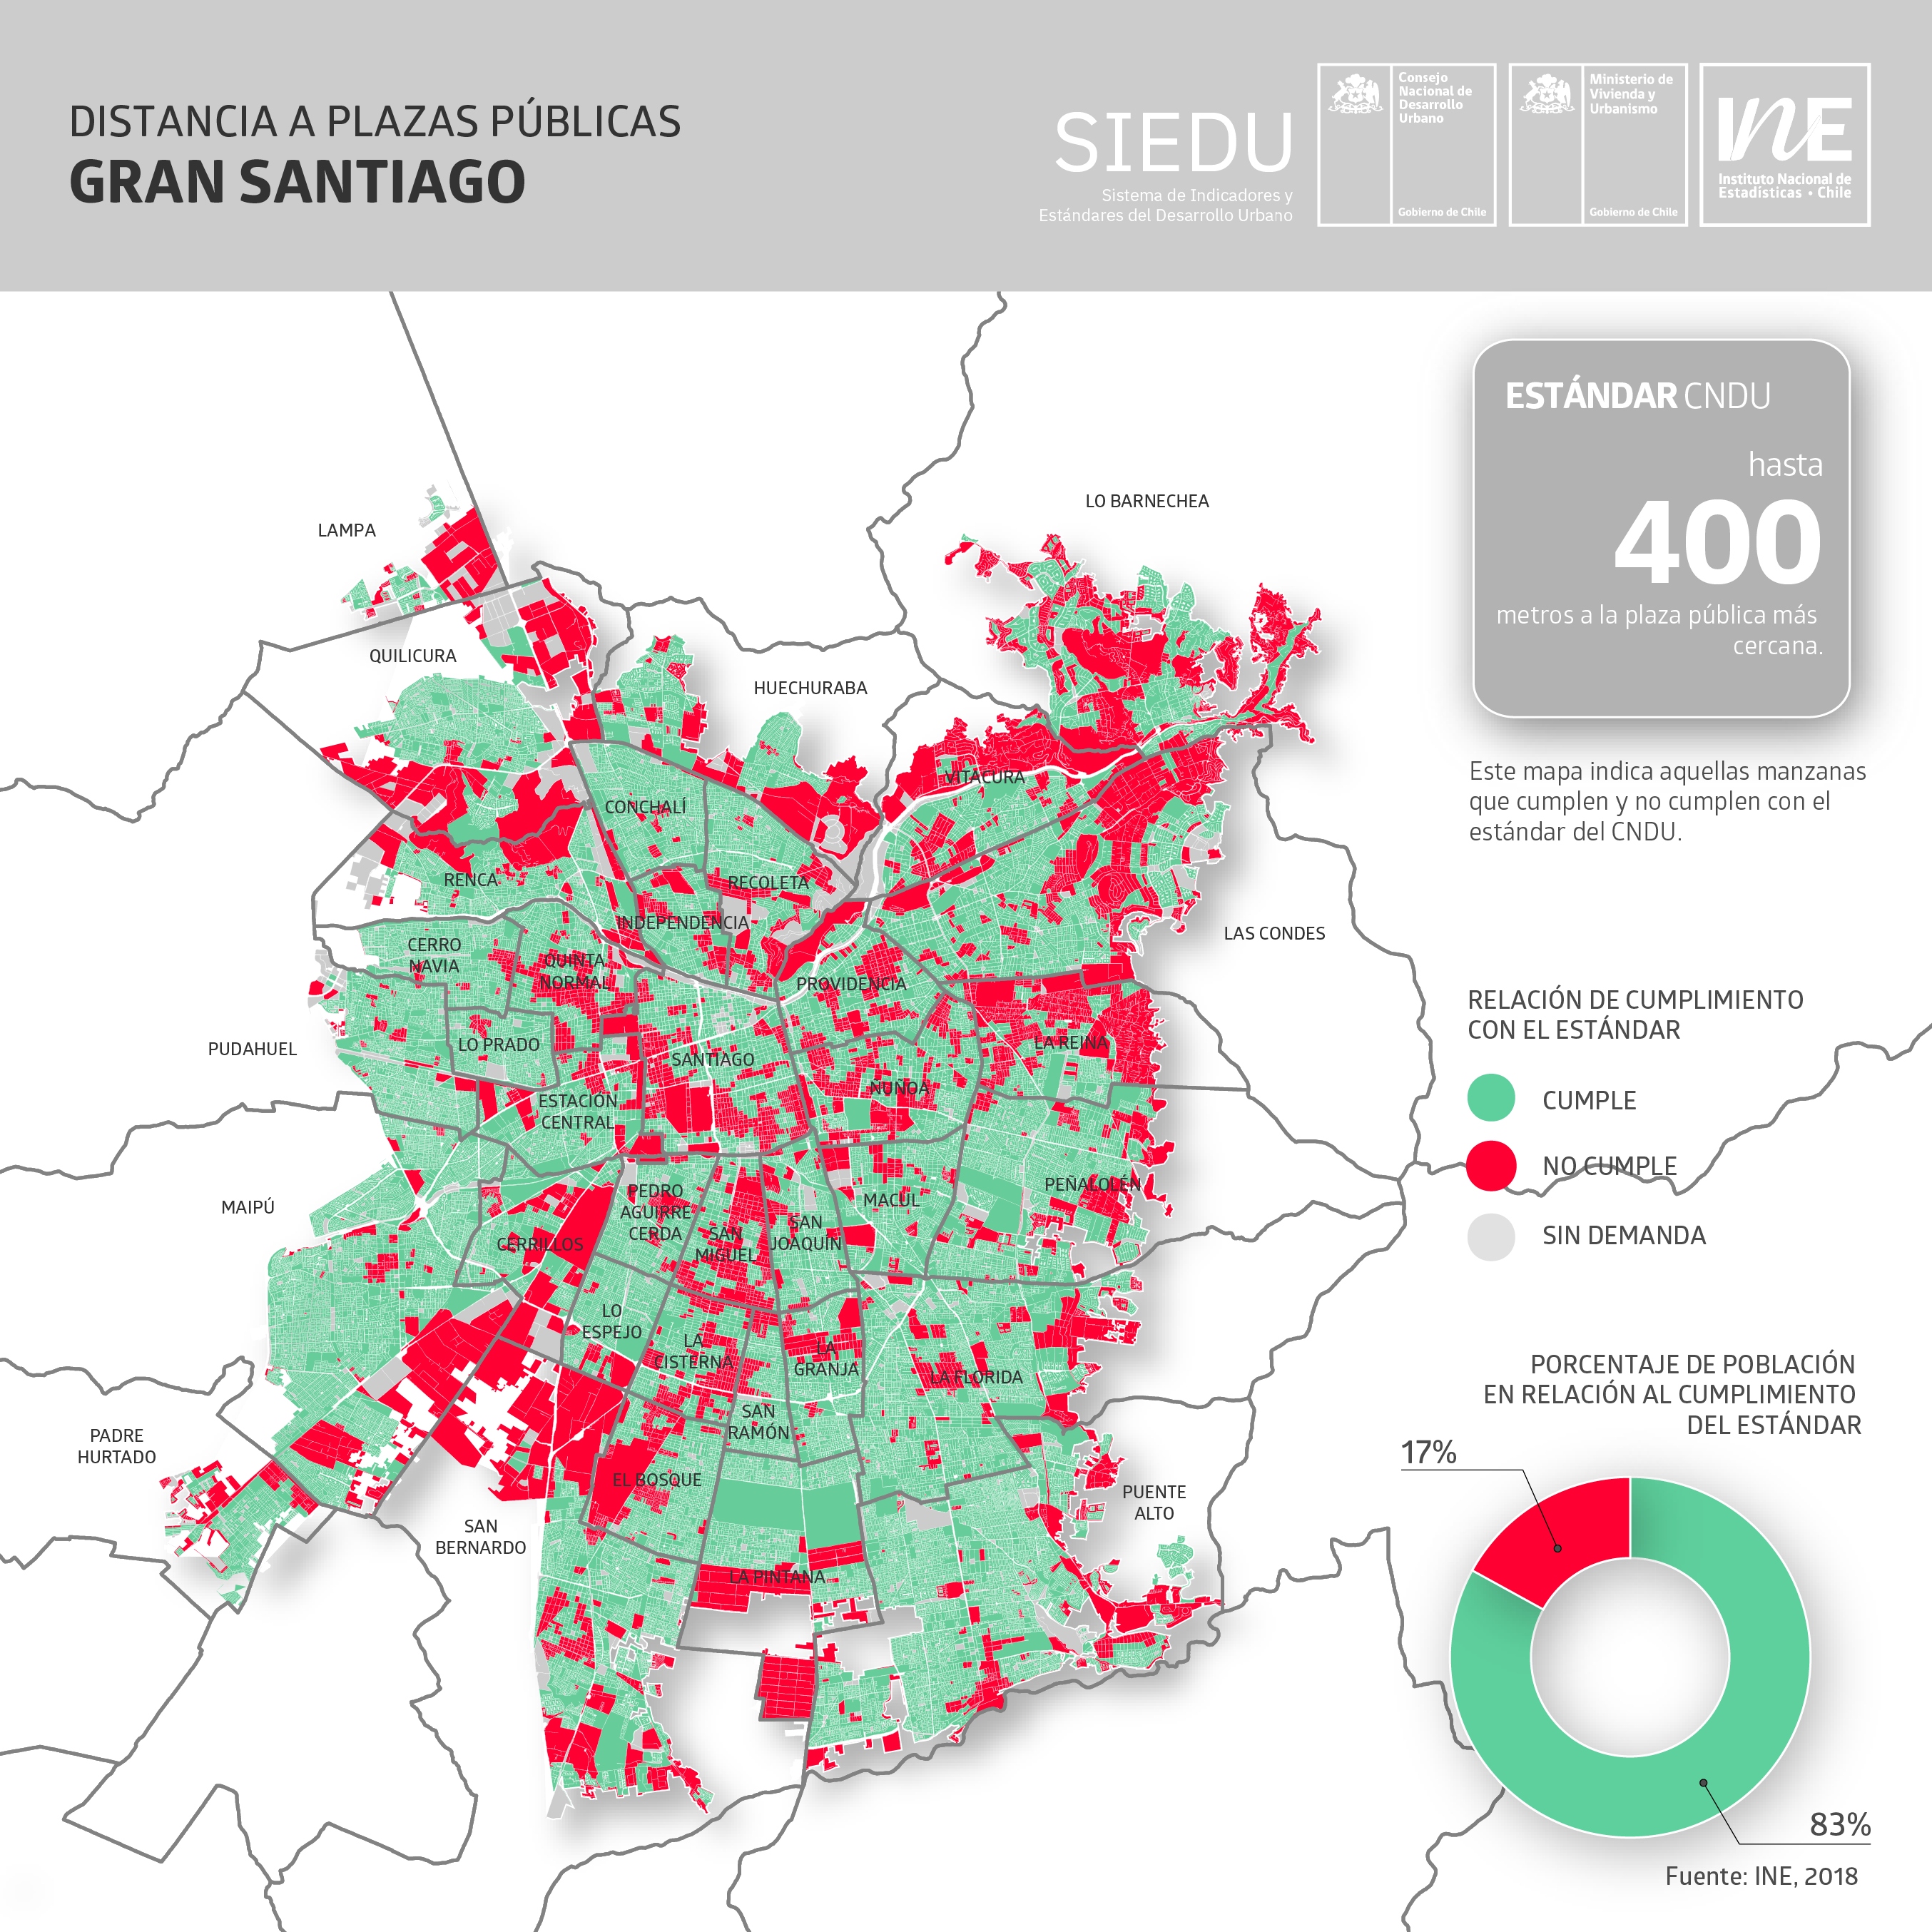 Mapa de comunas y su acceso cercano a plazas o áreas verdes Créditos: Minvu (2019)